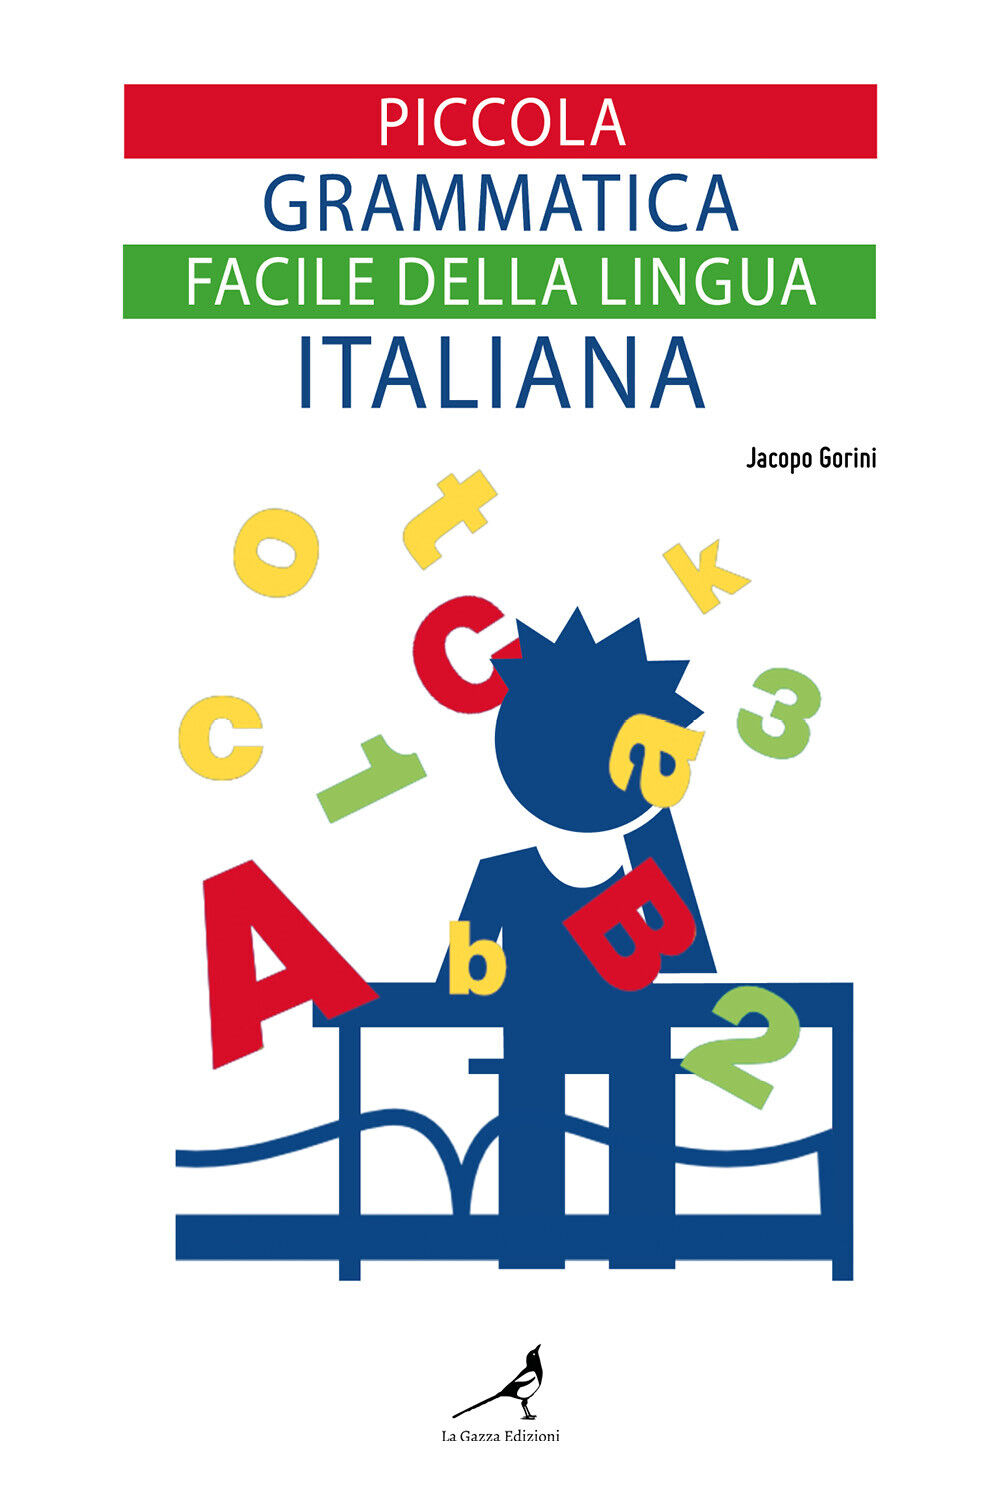 Piccola grammatica facile della lingua italiana,Jacopo Gorini,  2021, Youcanpr. libro usato